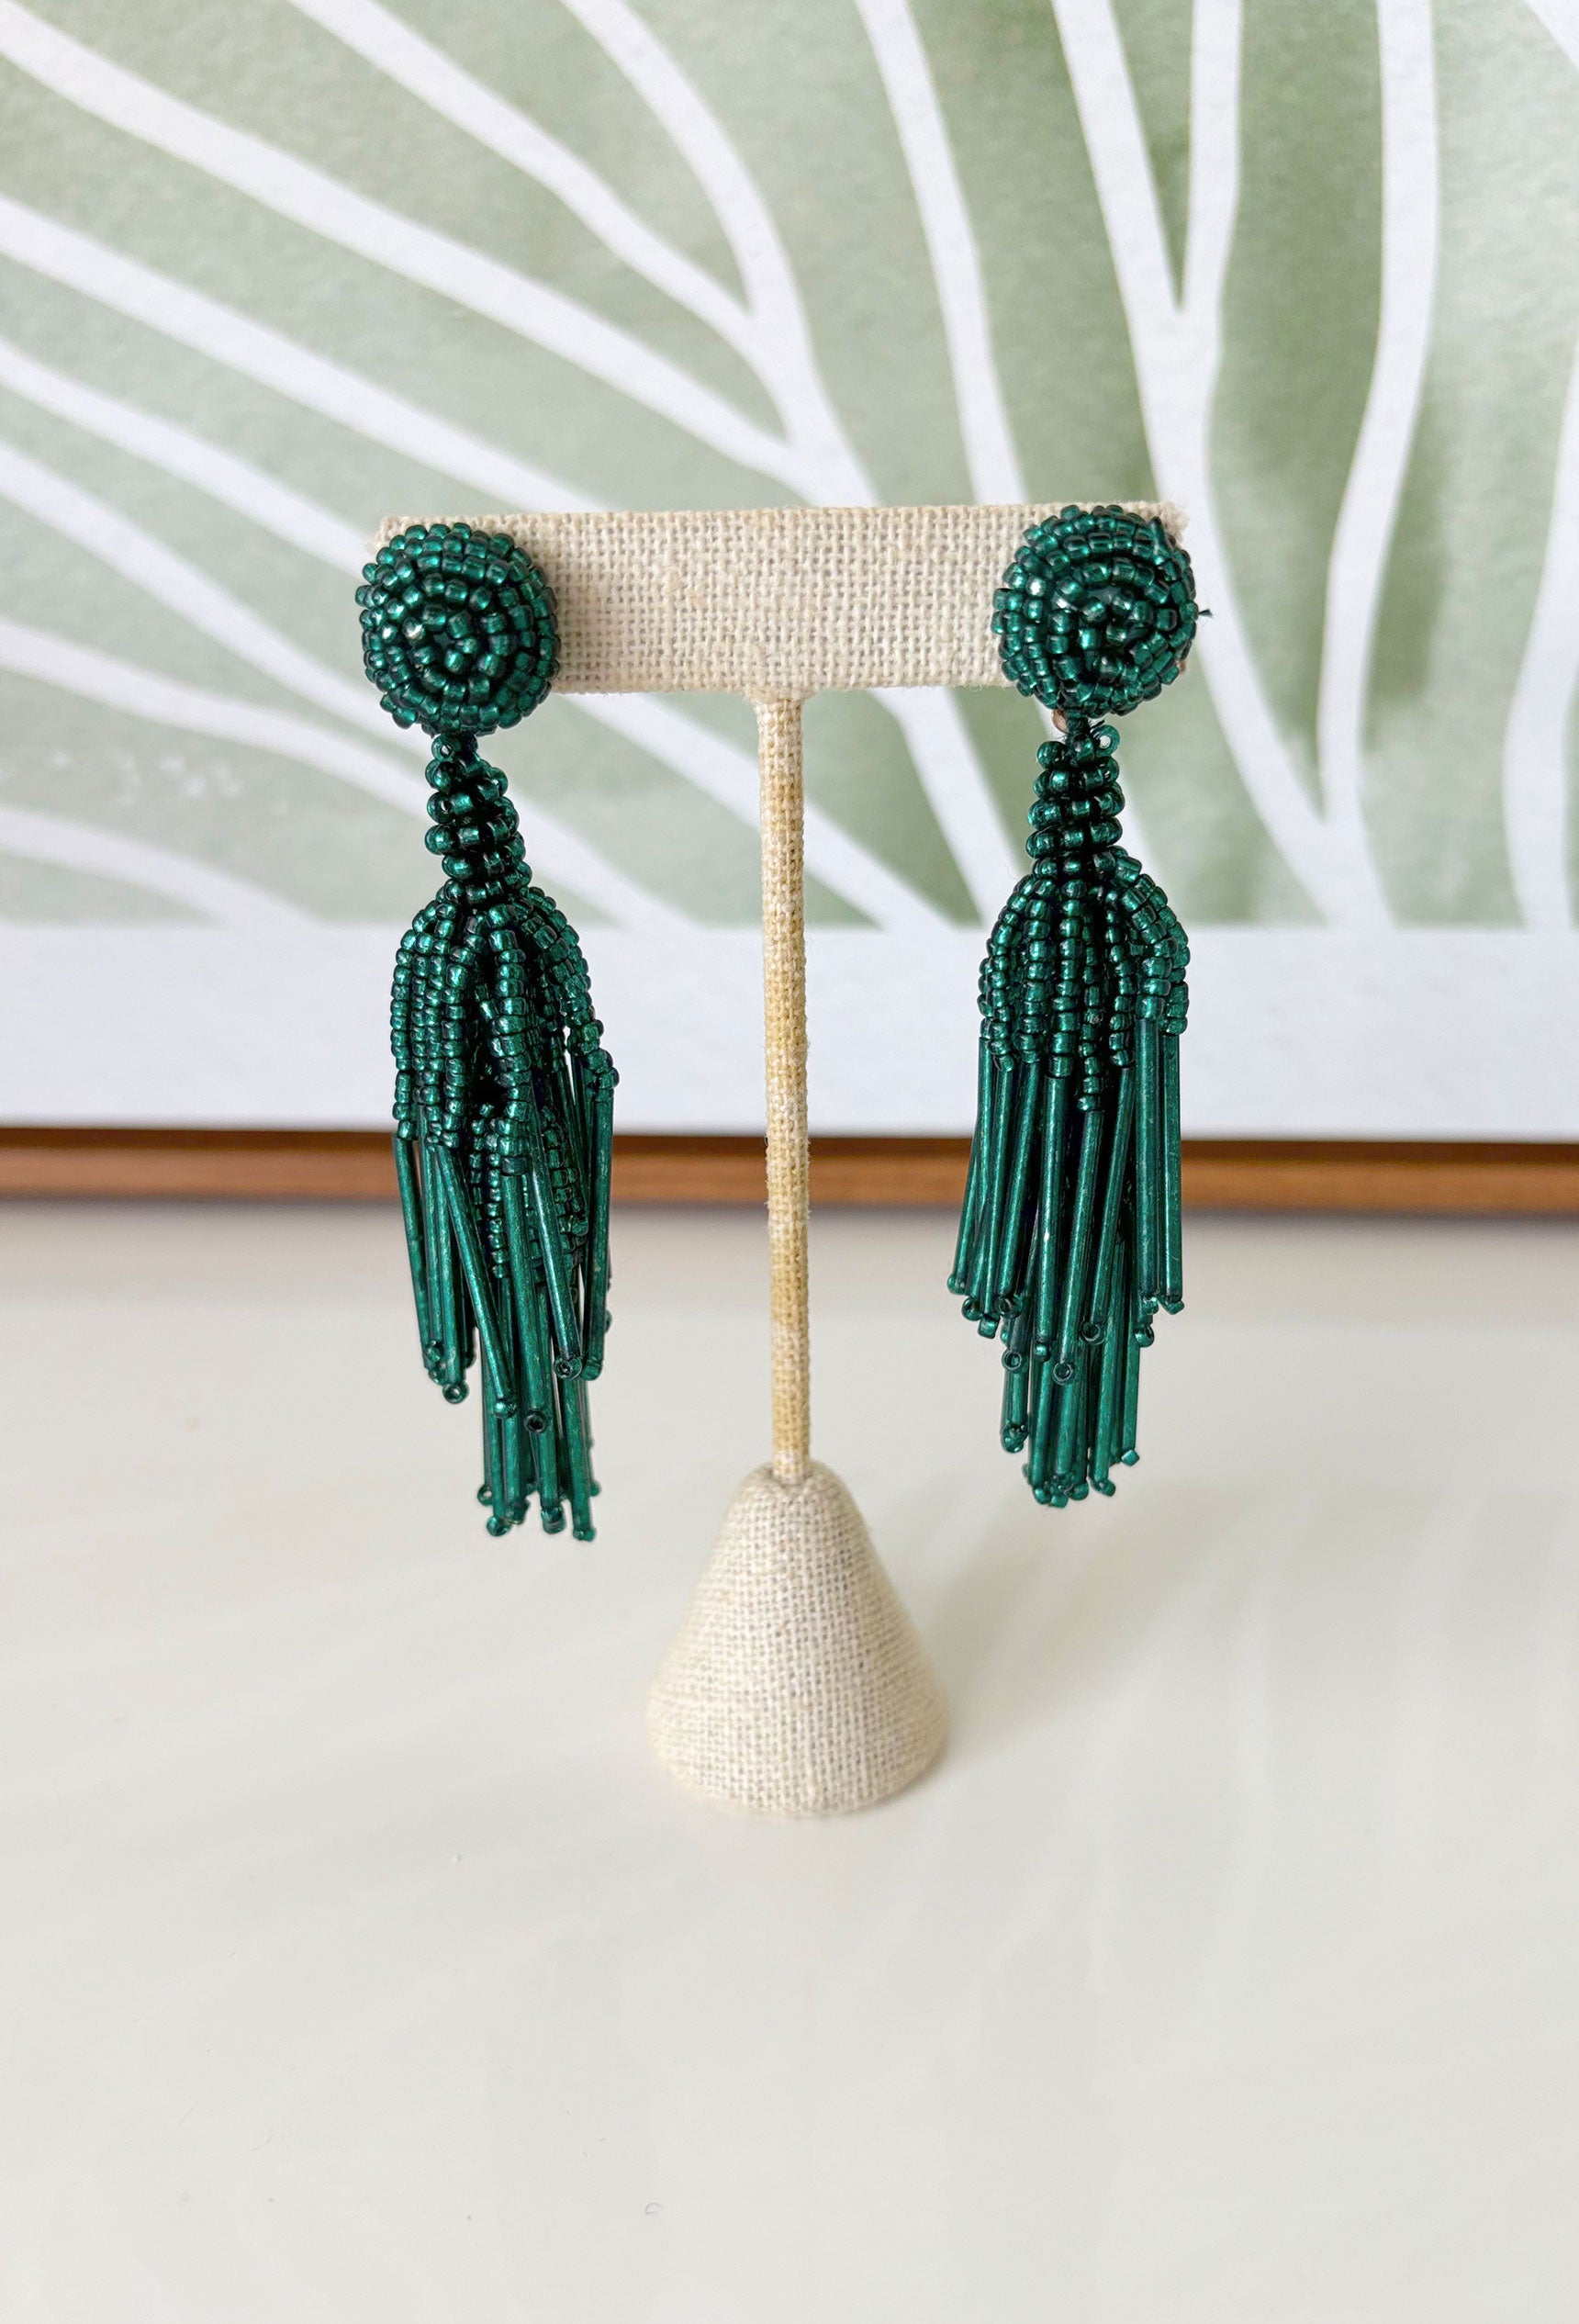 Express Yourself Earrings in Teal, green beaded tassel earrings